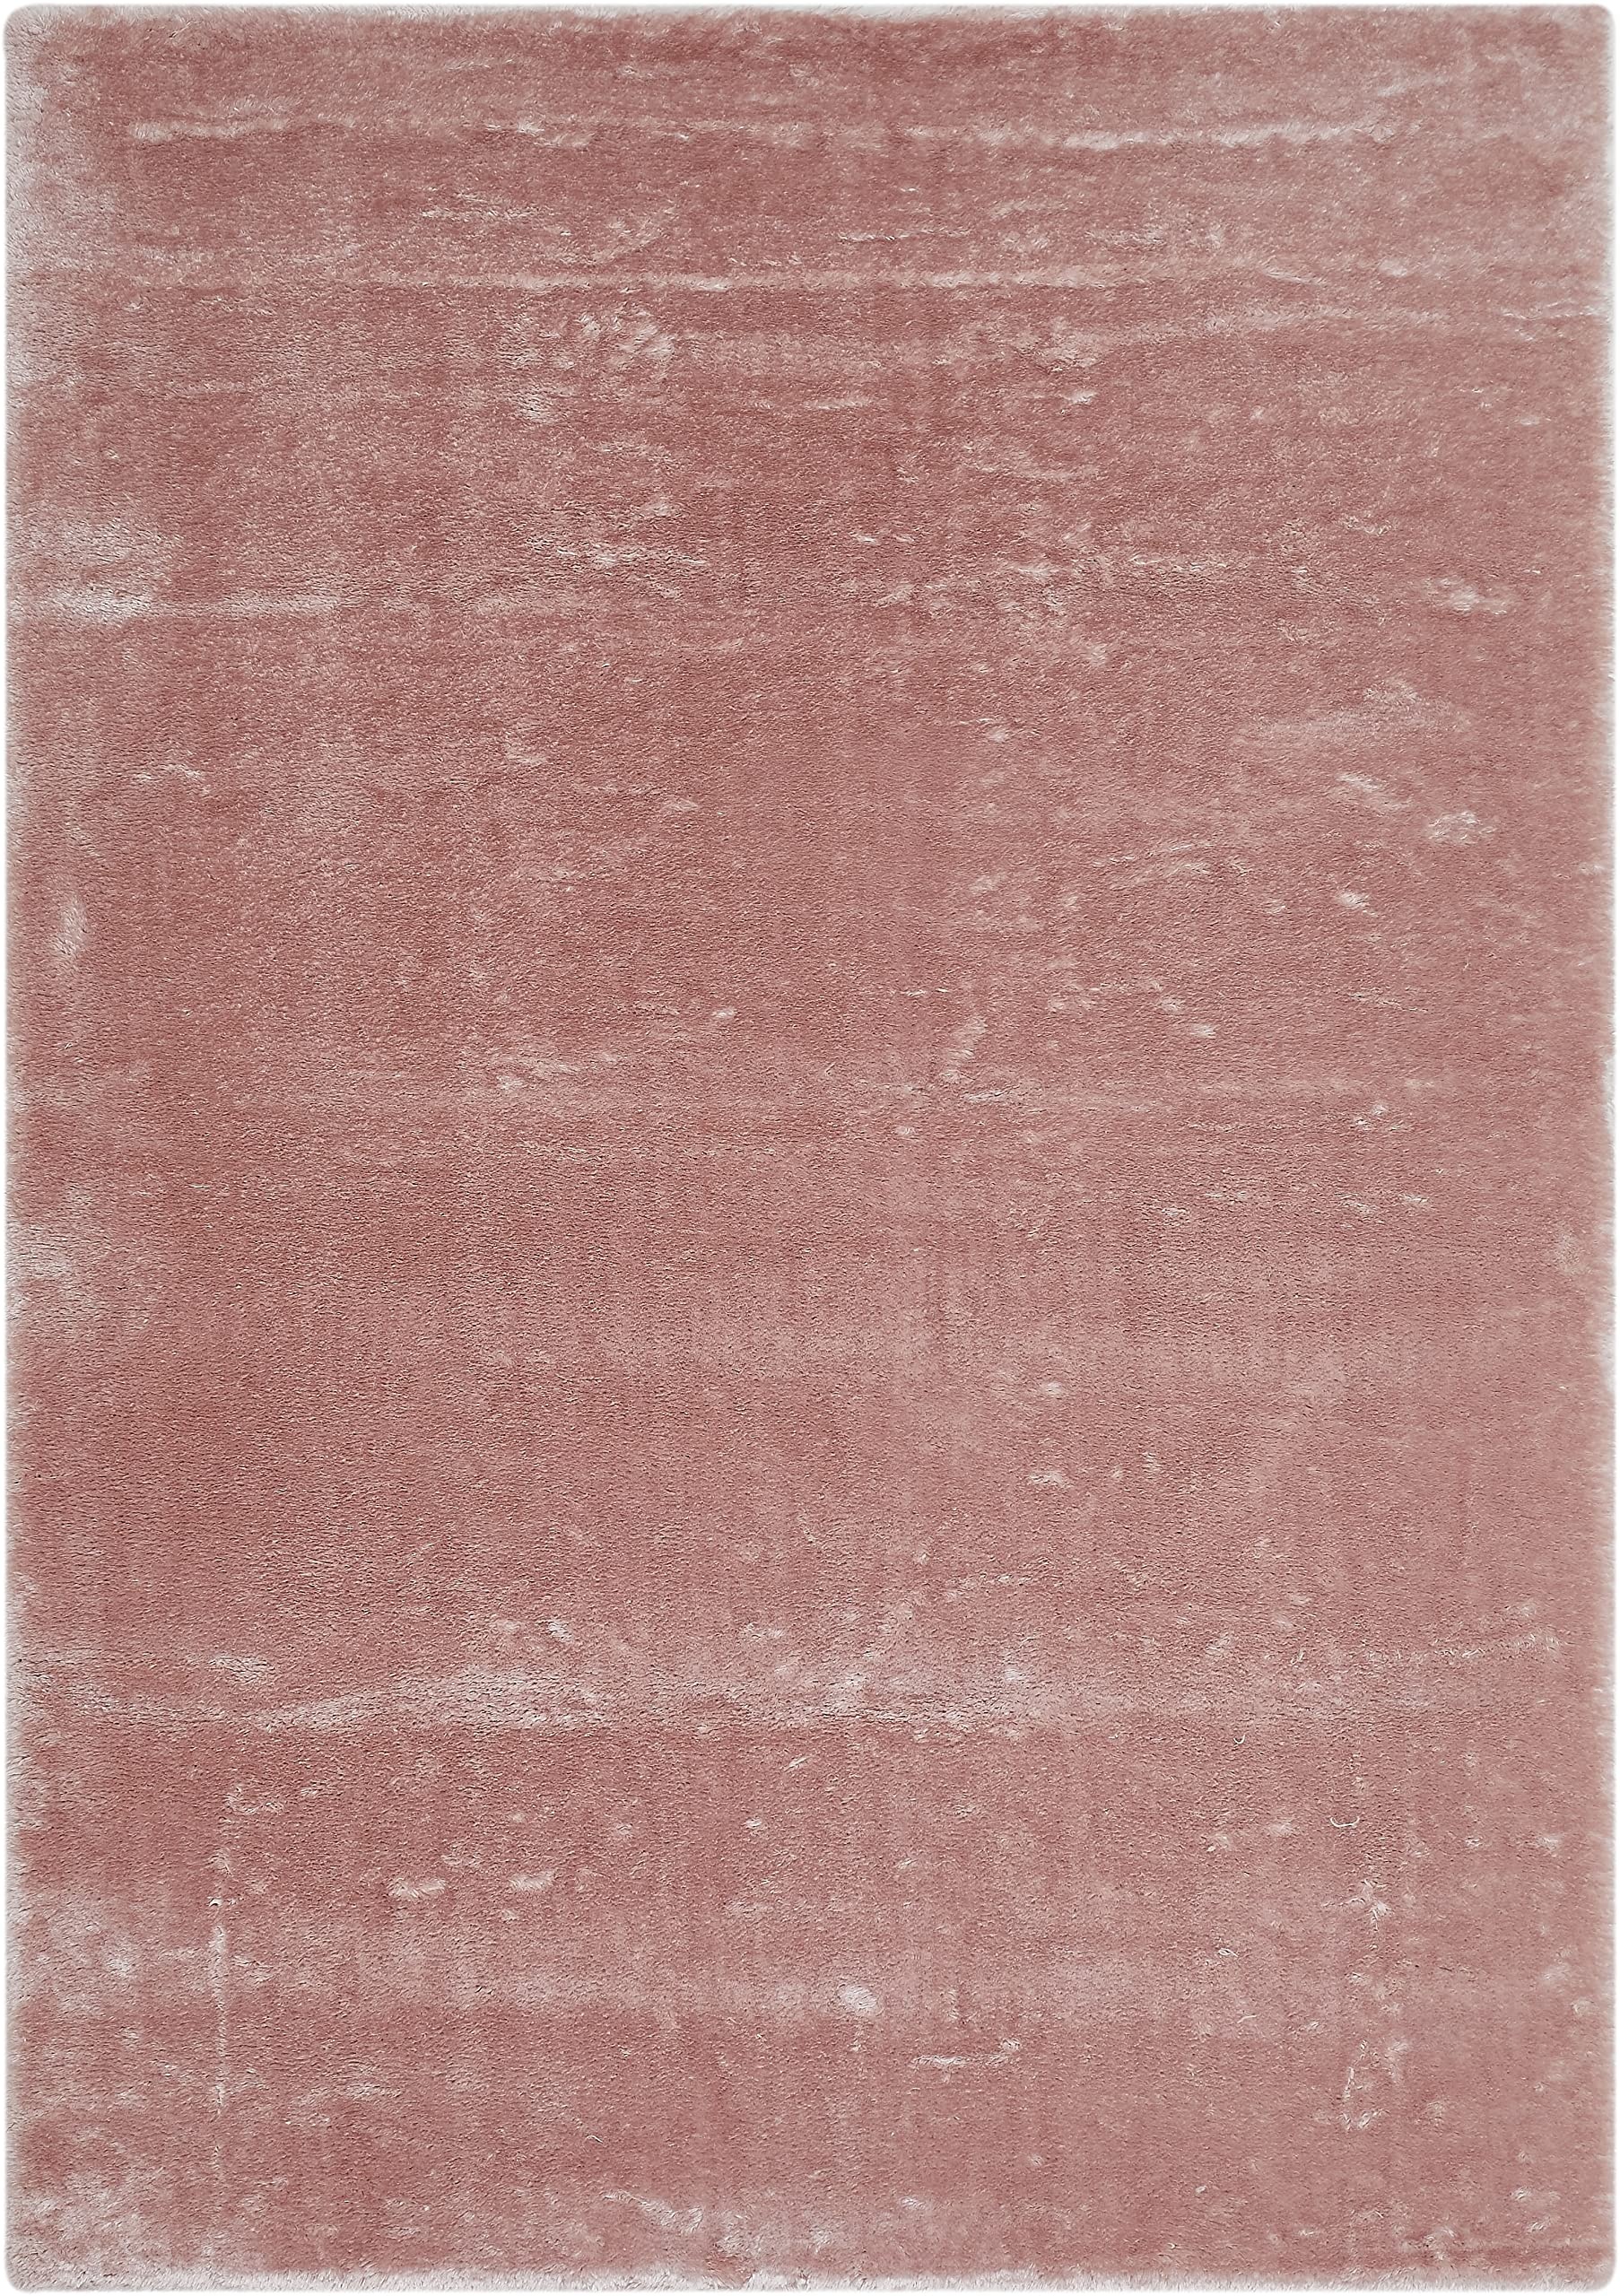 andiamo Teppich Lambskin - Kunstfell - flauschiger Teppich Schlafzimmer - geeignet als Bettvorleger Schlafzimmer oder als Fellteppich Wohnzimmer - Lammfellimitat pflegeleicht 120 x 170 cm rosa